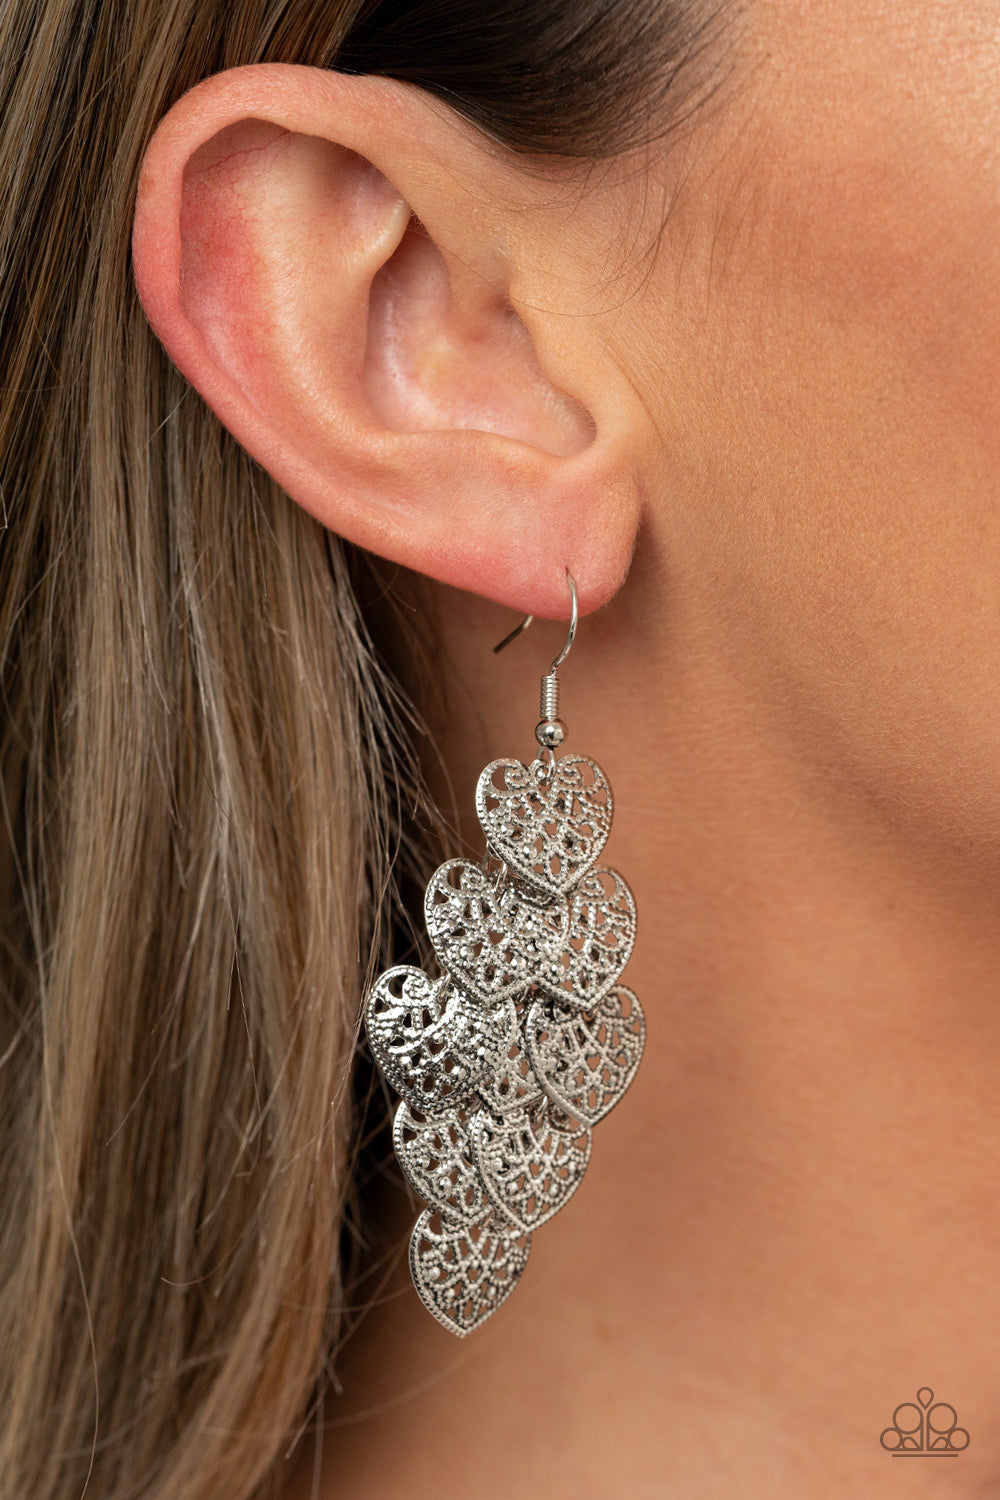 Shimmery Soulmates Earrings - Silver